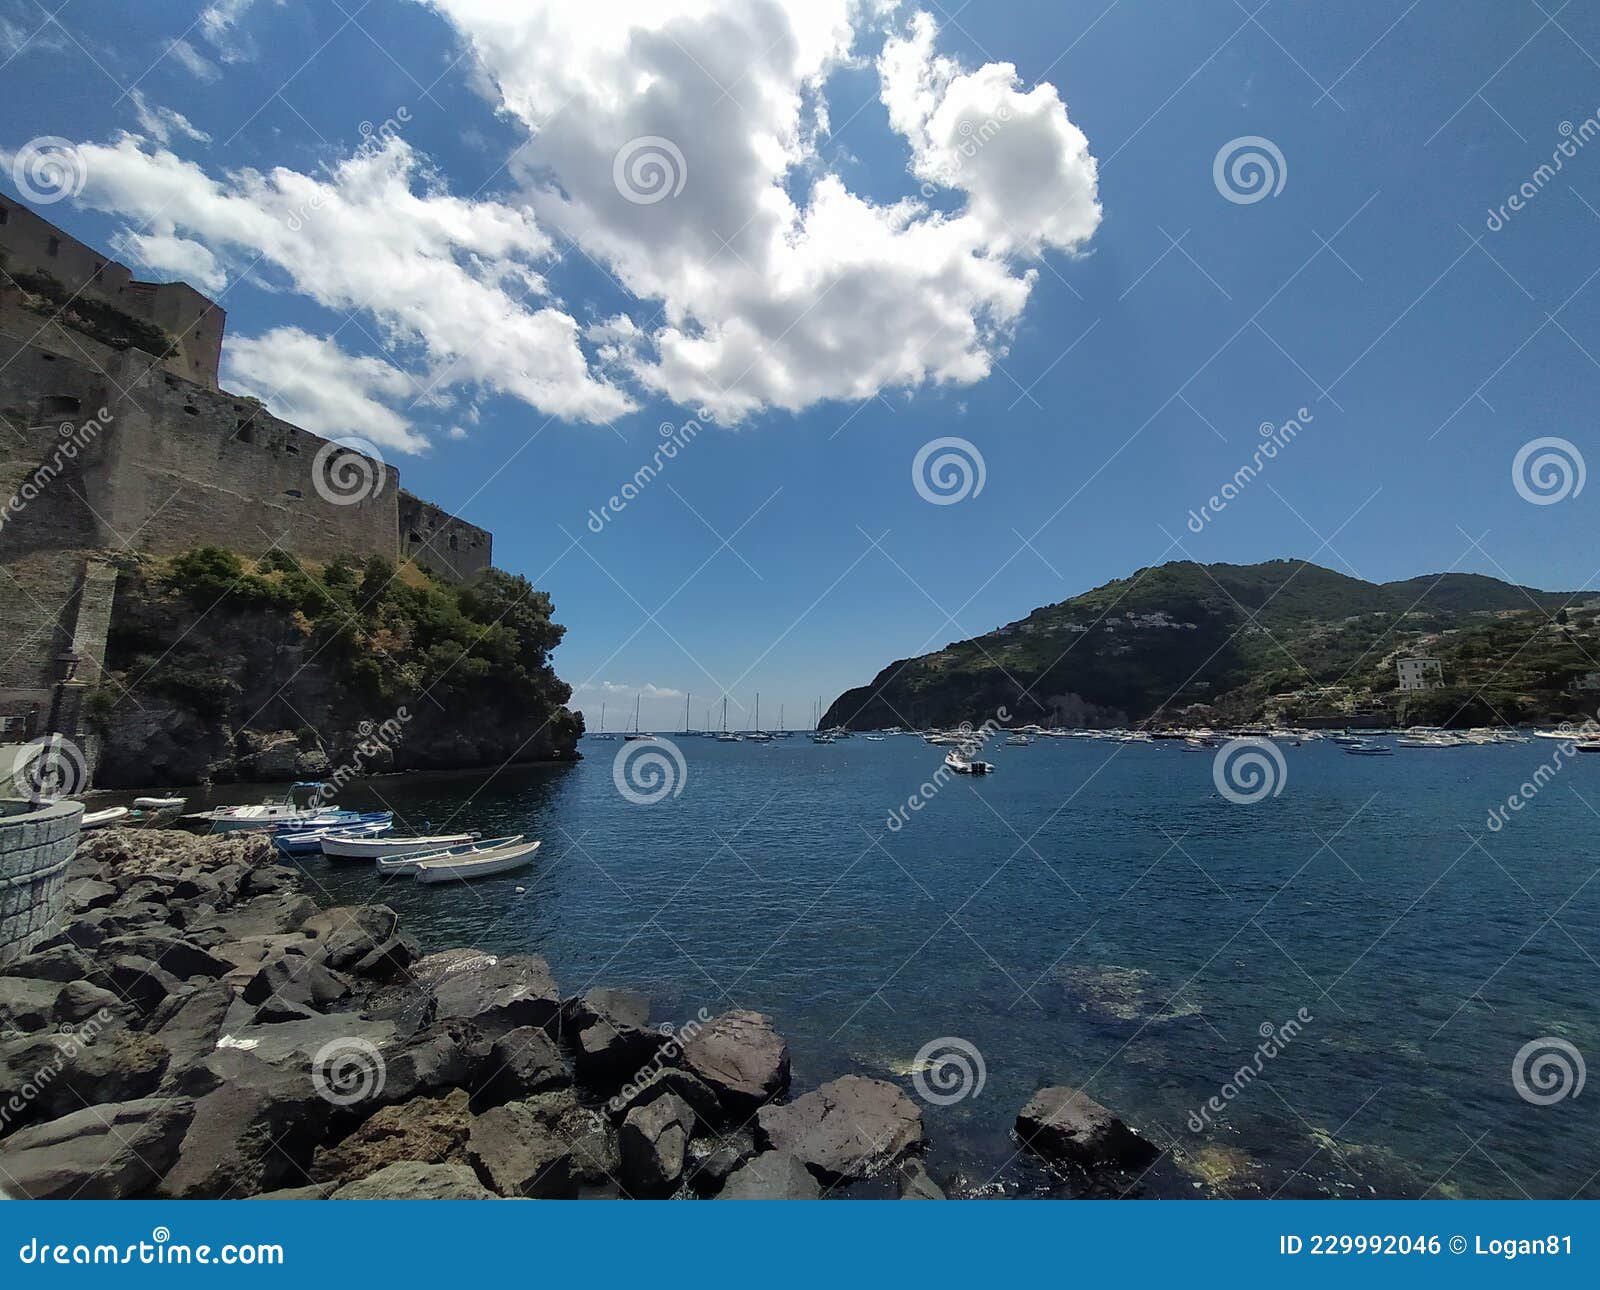 aragones caslte in ischia island, italy